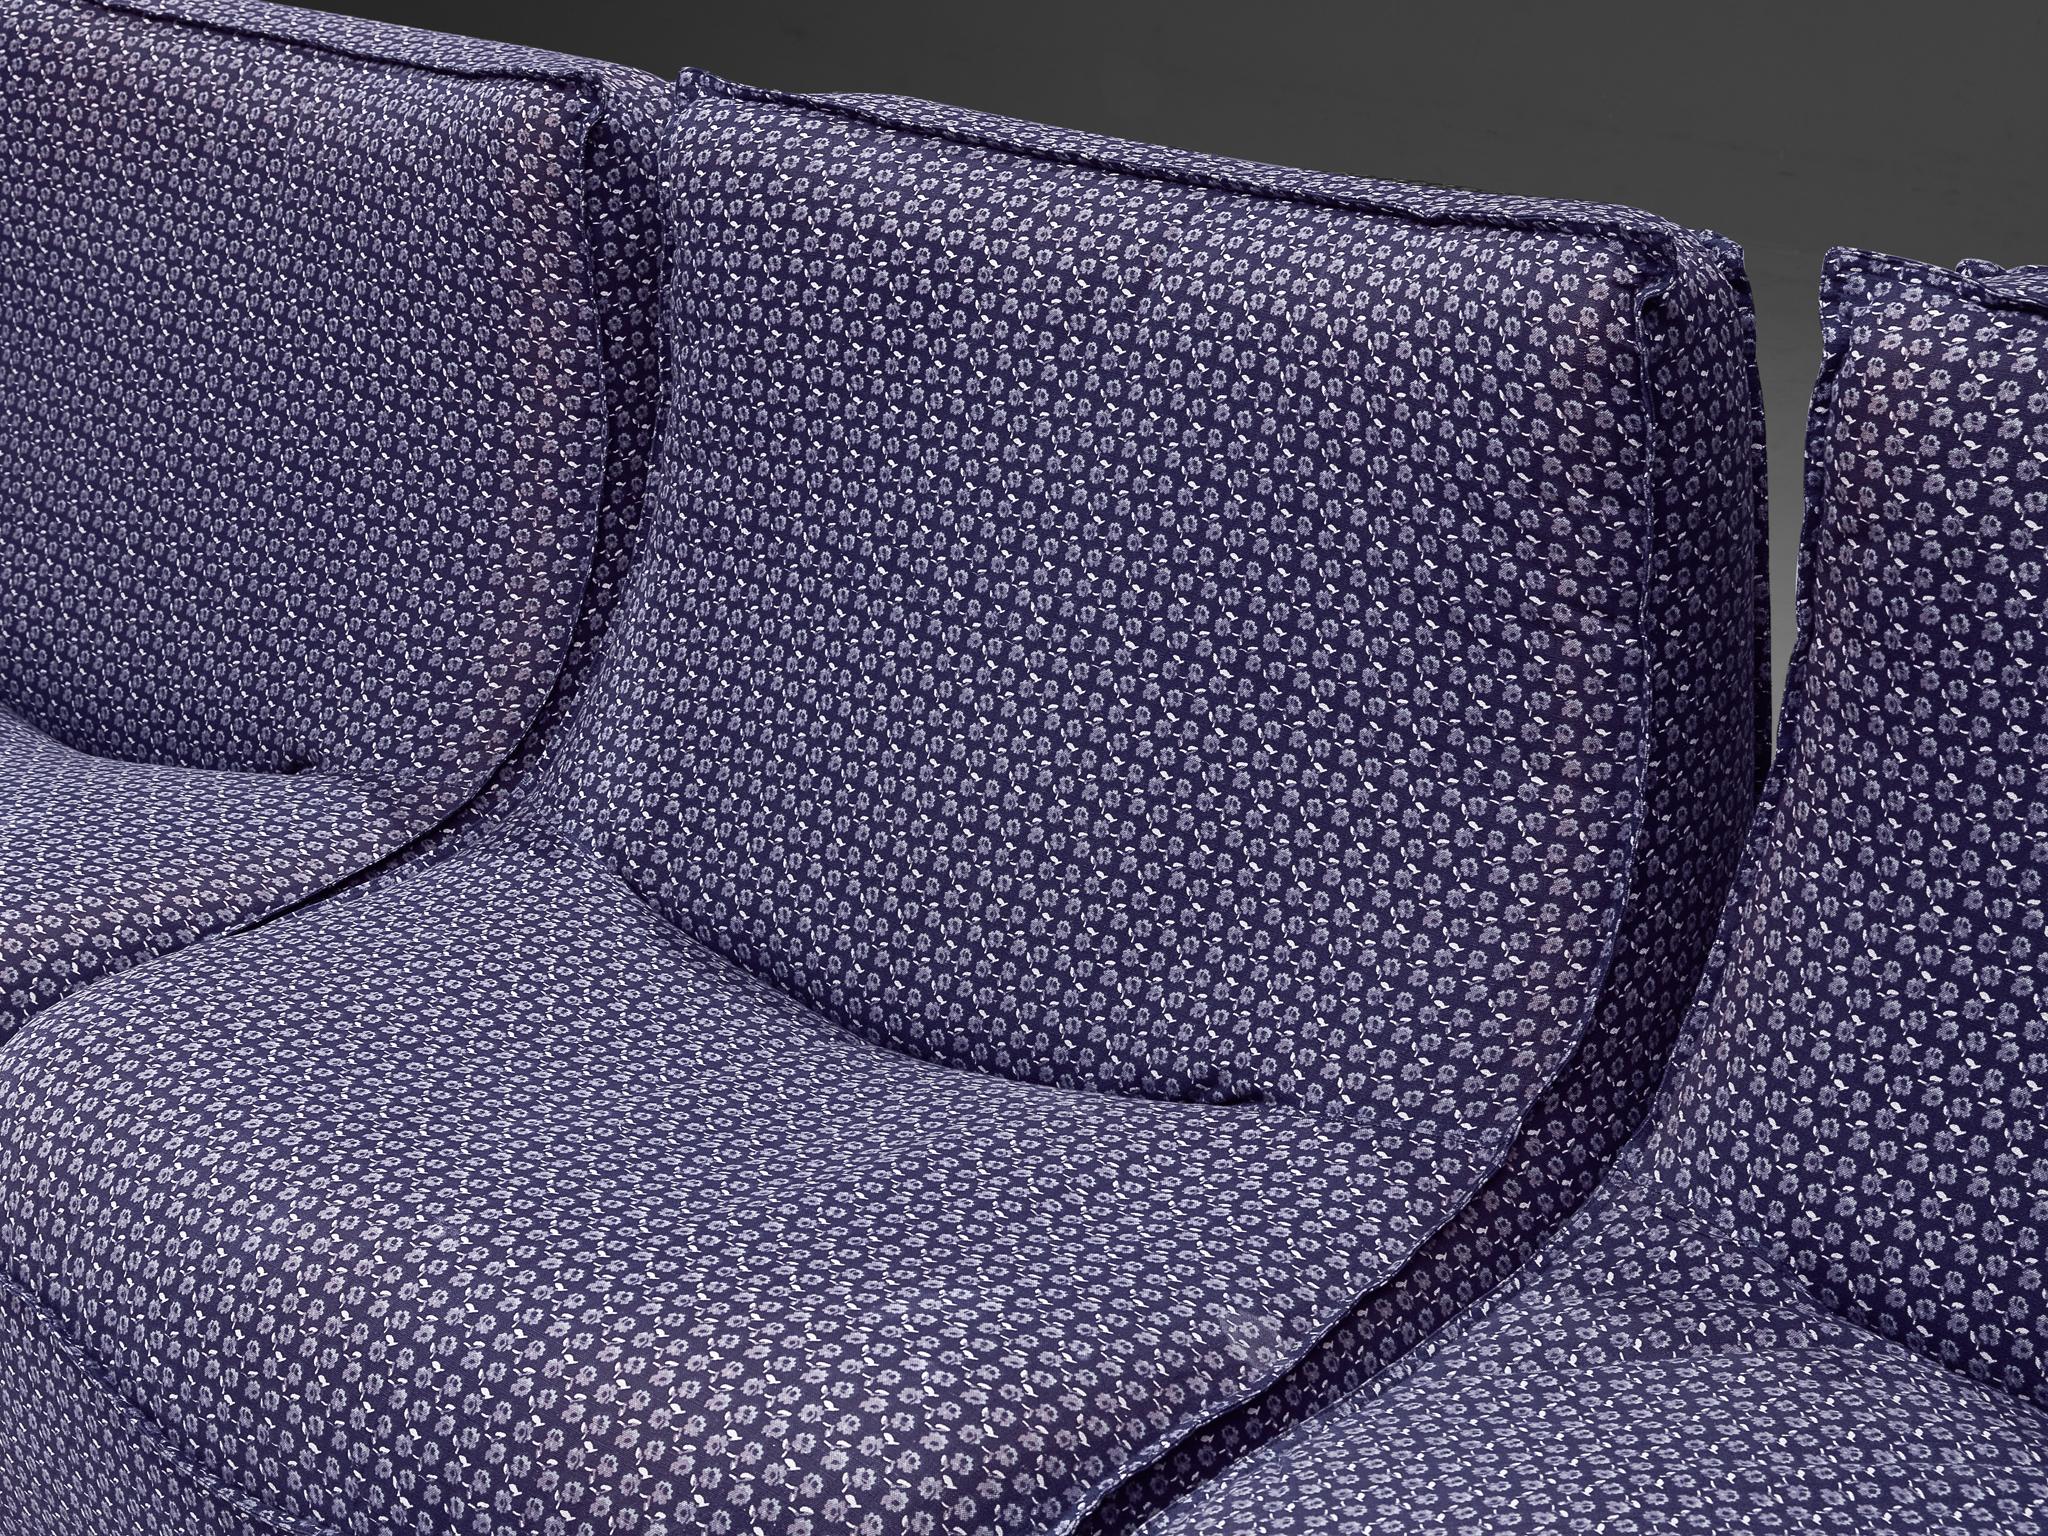 Rare Bernard Govin for Ligne Roset Sectional Sofa in Purple Upholstery For Sale 2